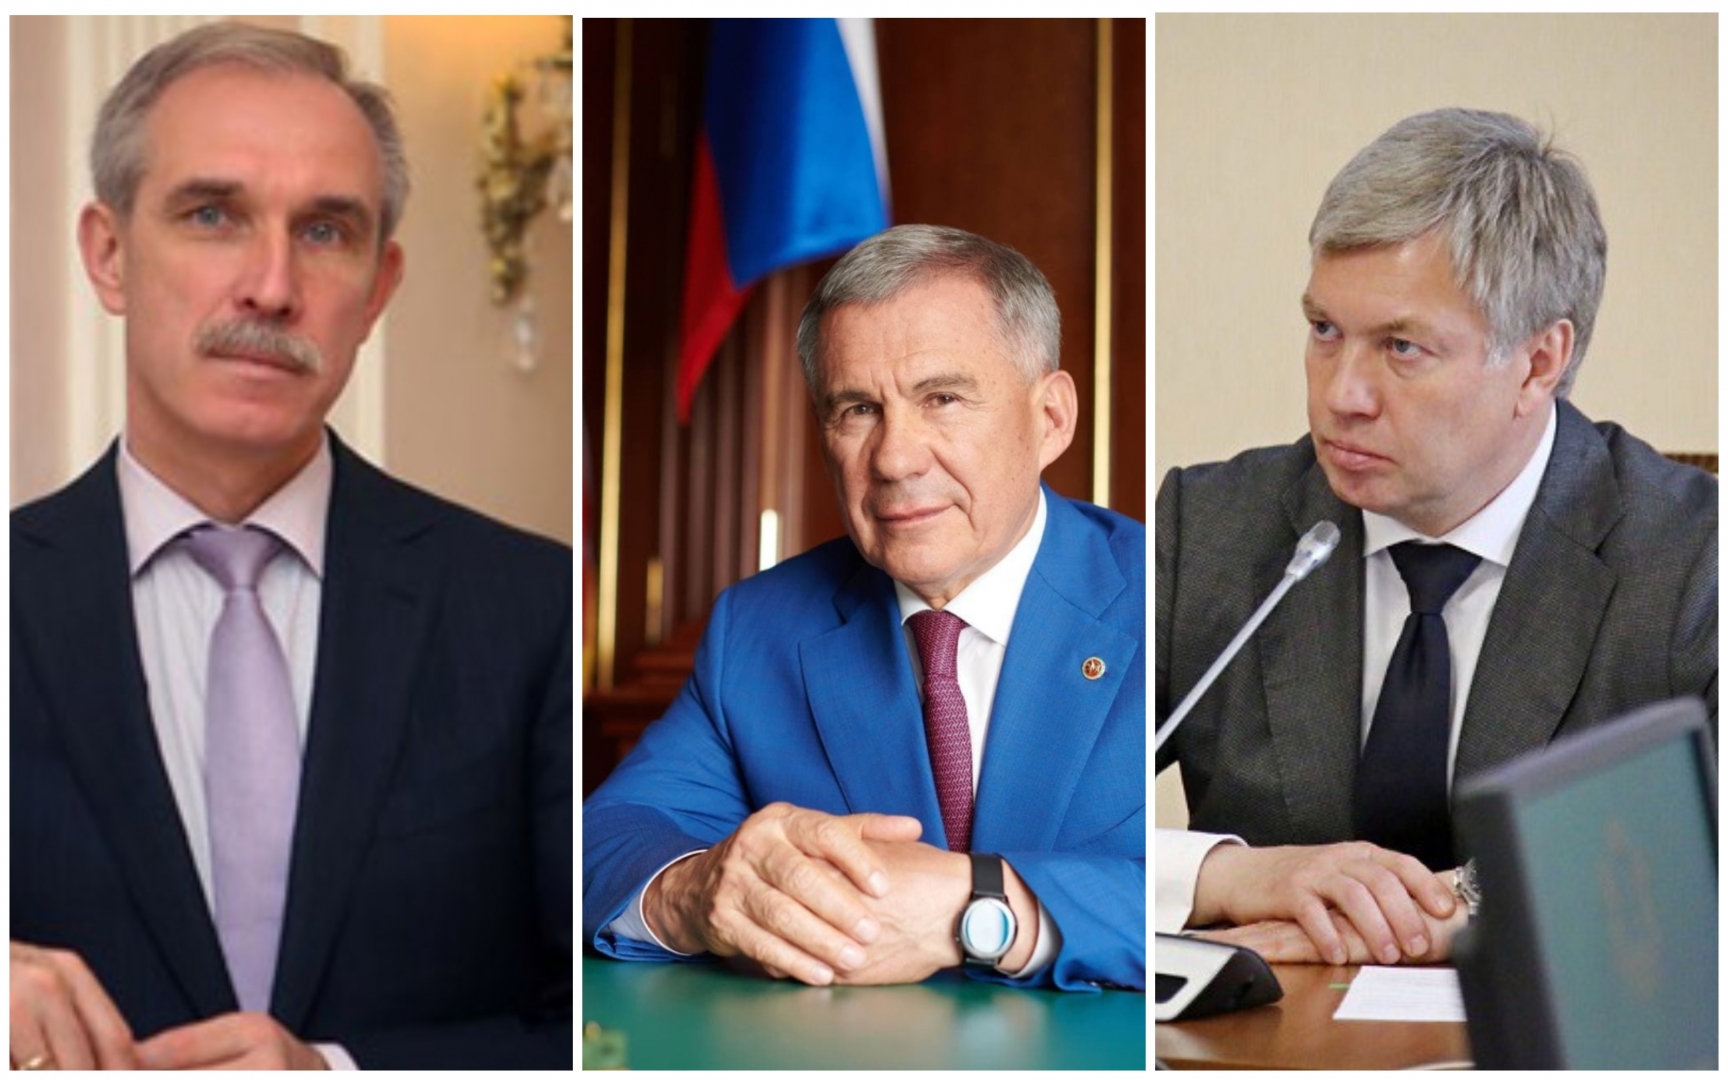 Ульяновскую область предложили присоединить к Татарстану: Морозов и Минниханов за, Русских – против